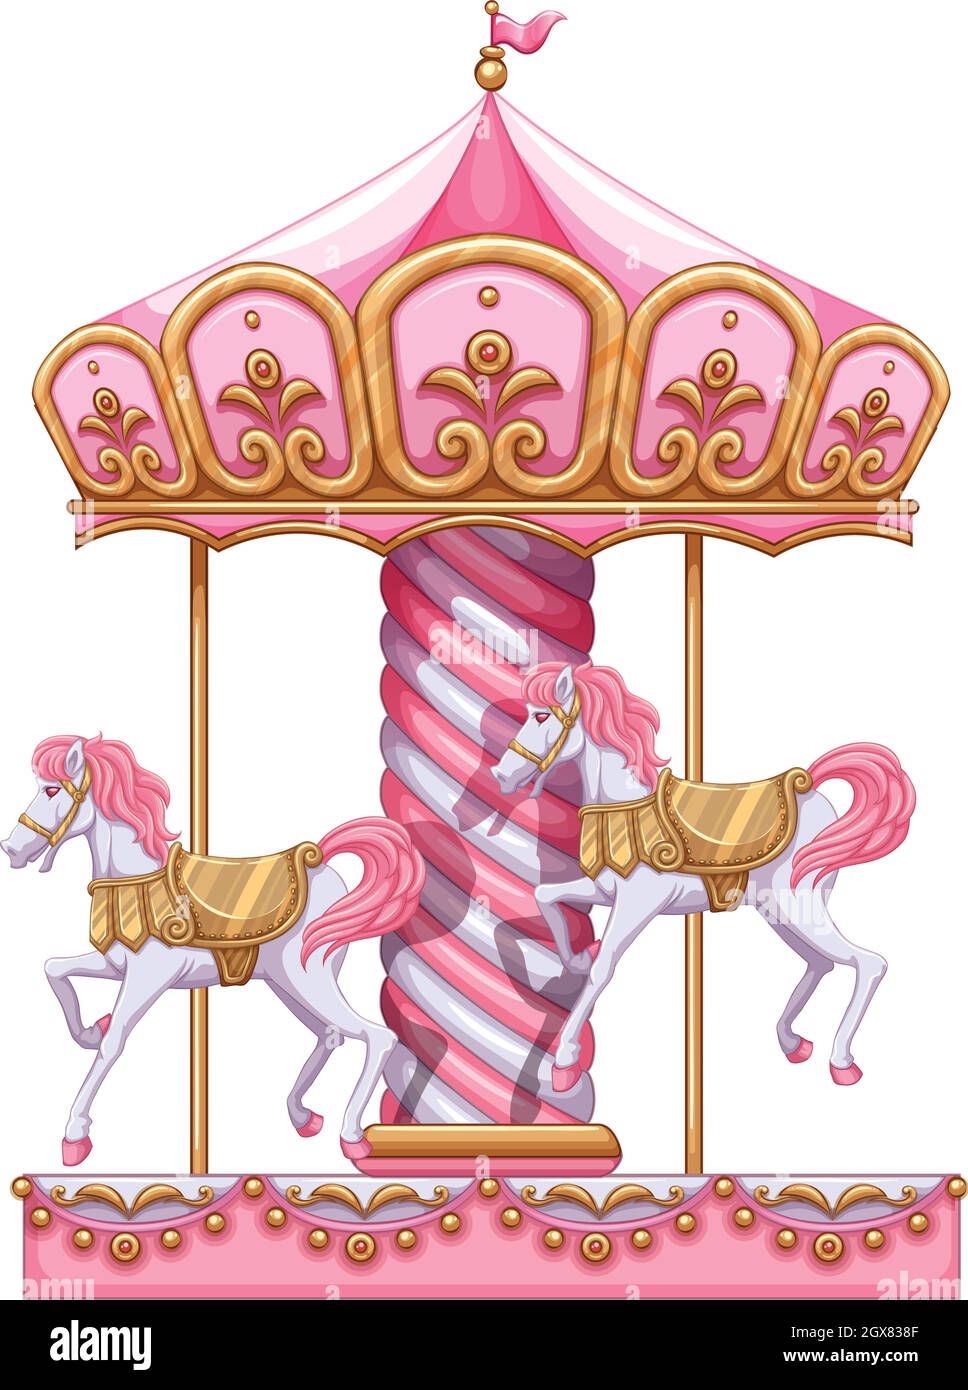 A carousel ride Stock Vector